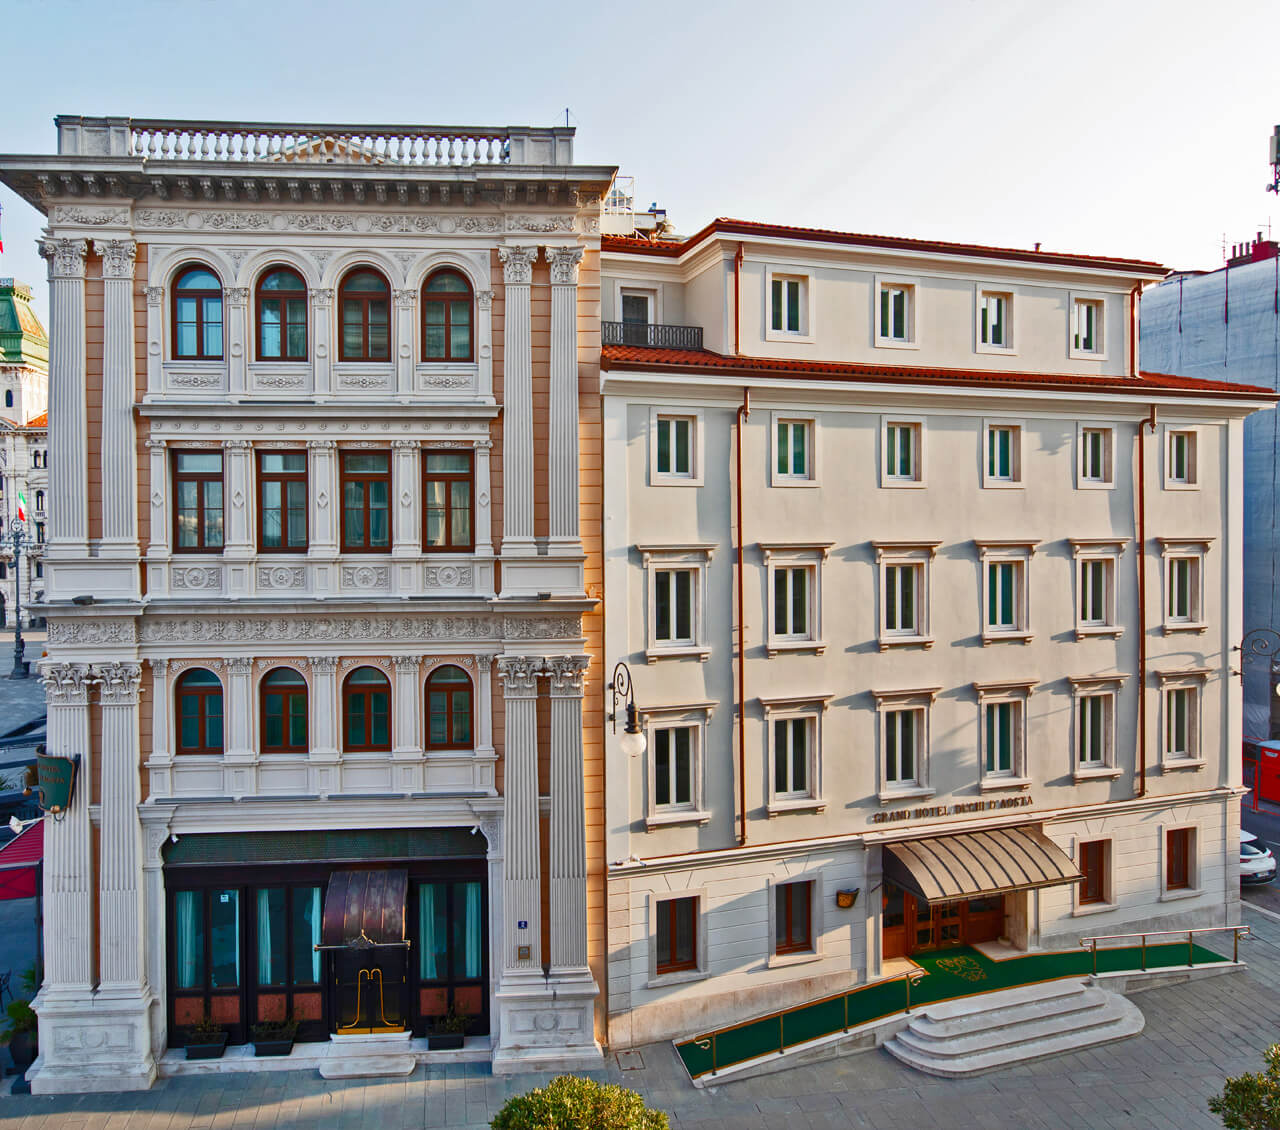 Grand Hotel Duchi Aosta . Piazza  Unità d’Italia  Trieste